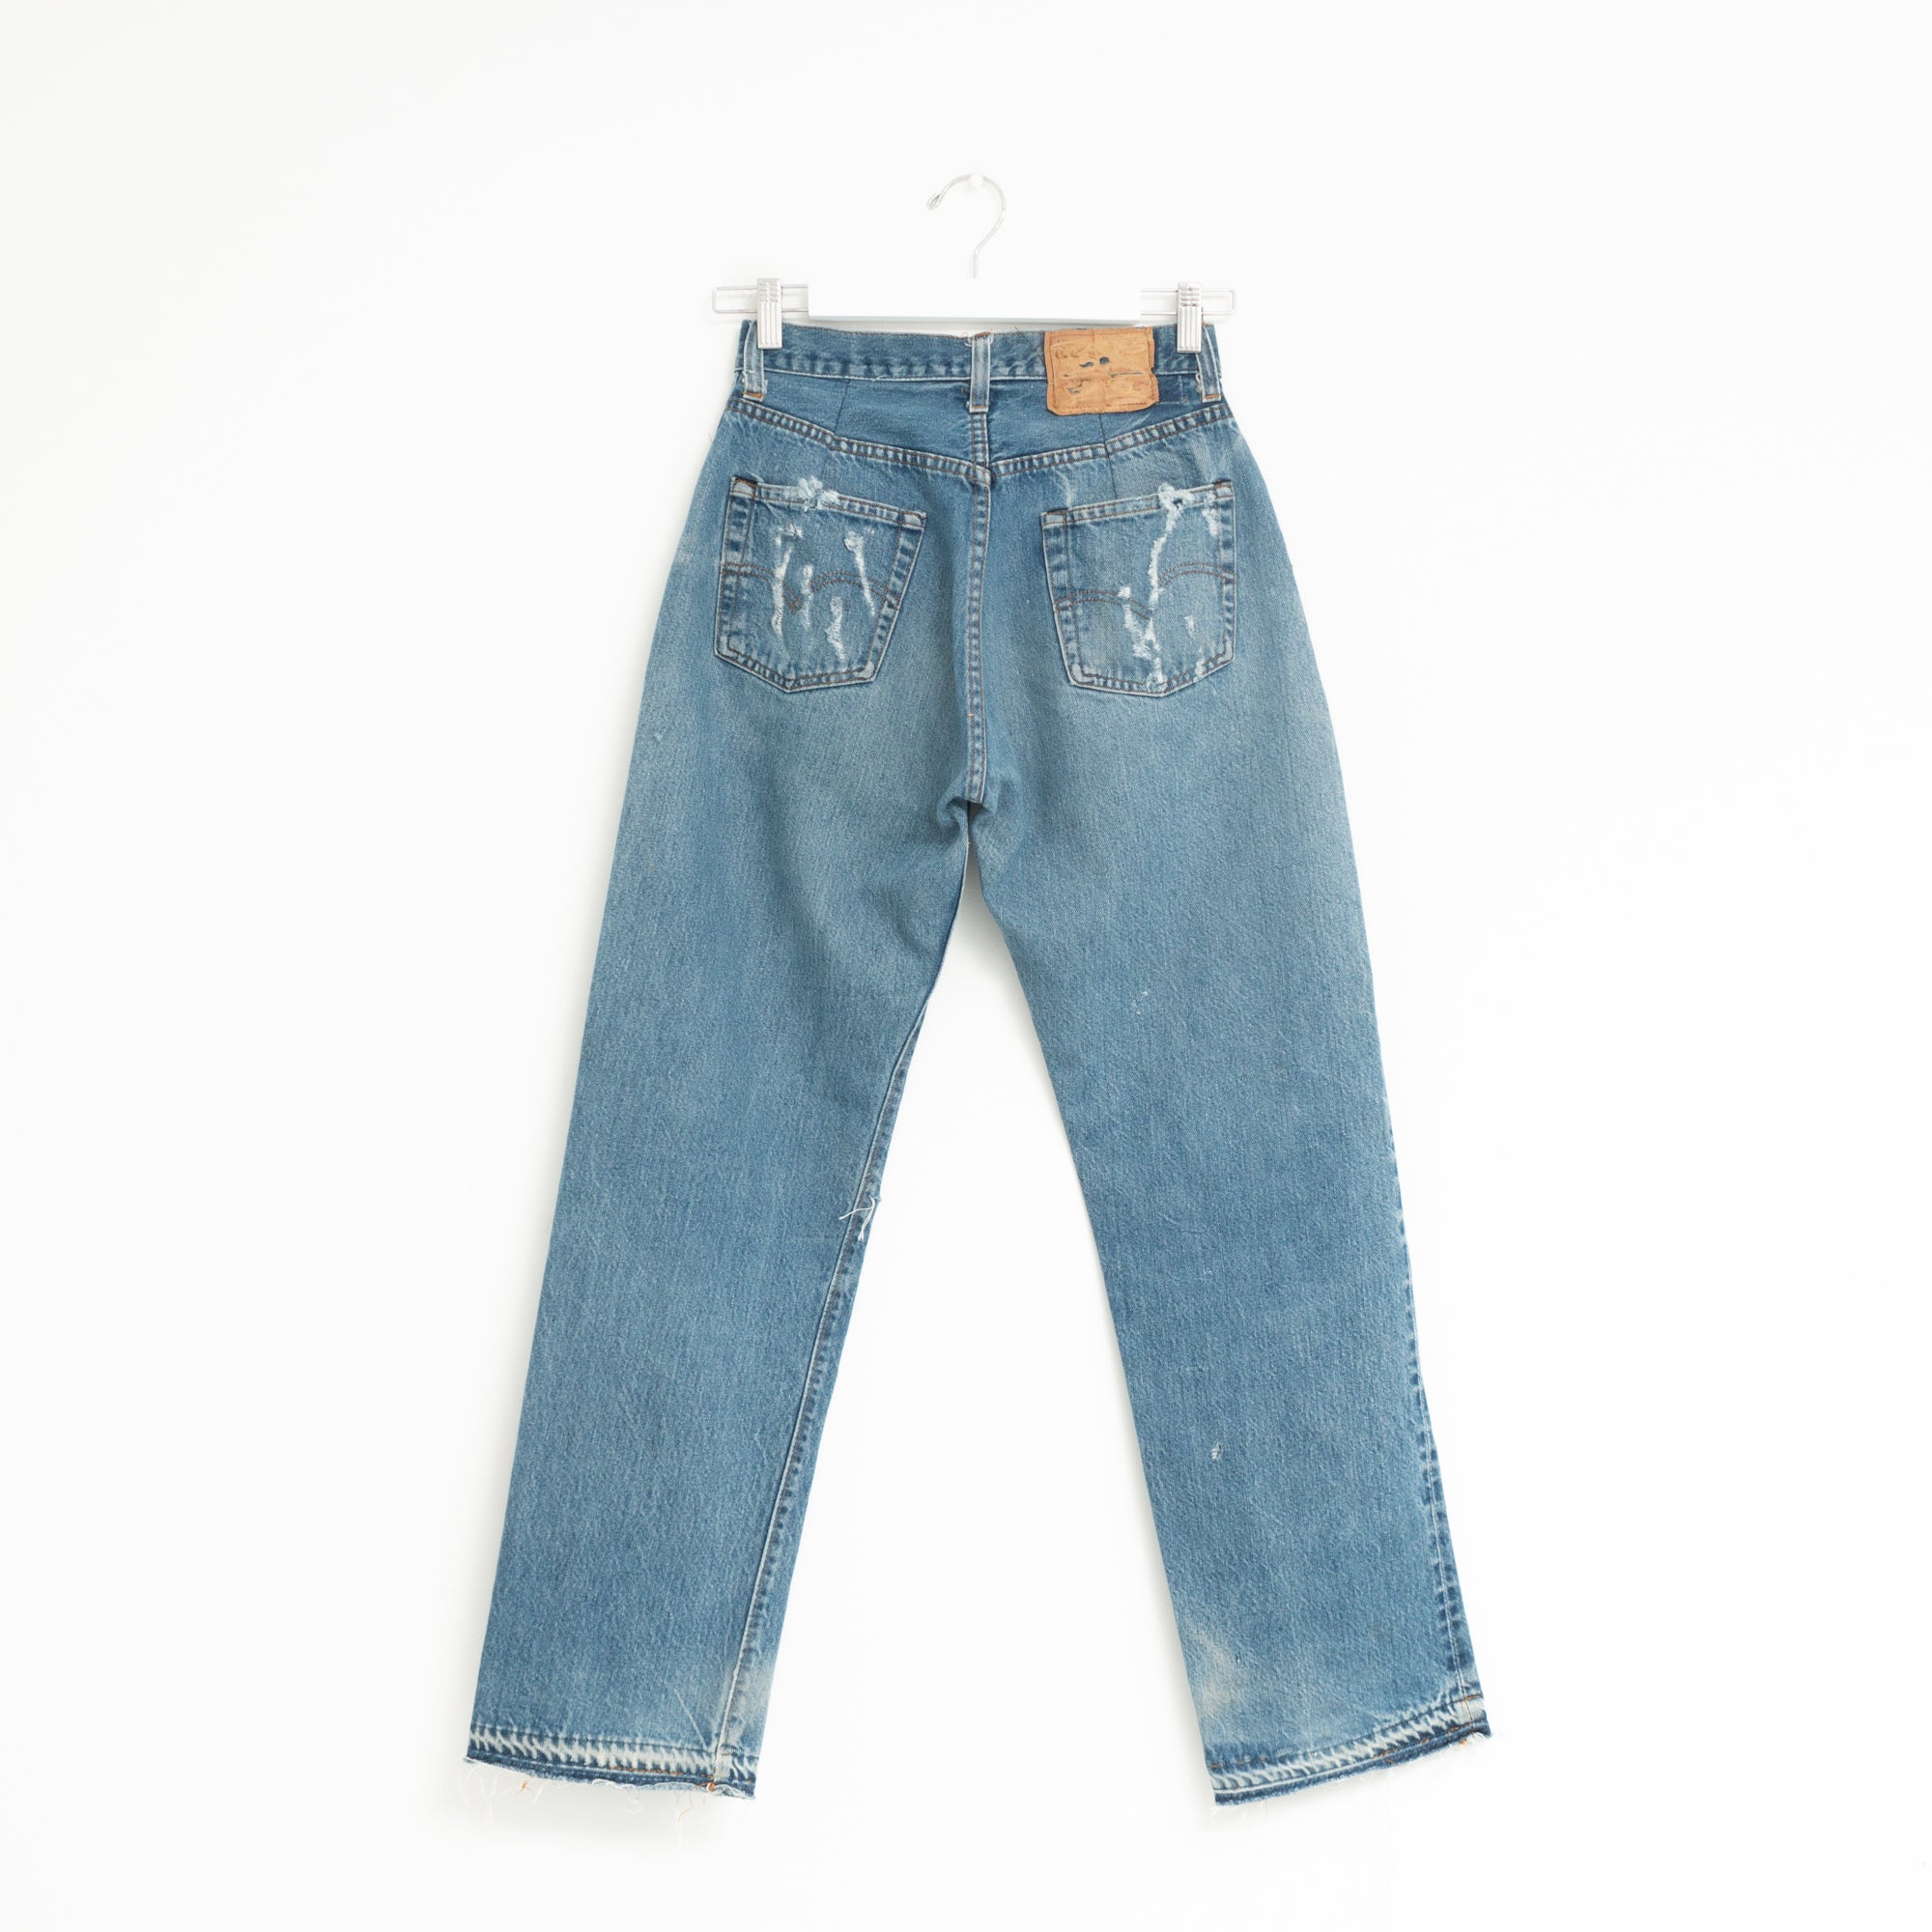 "DISTRESSED" Jeans W27 L30